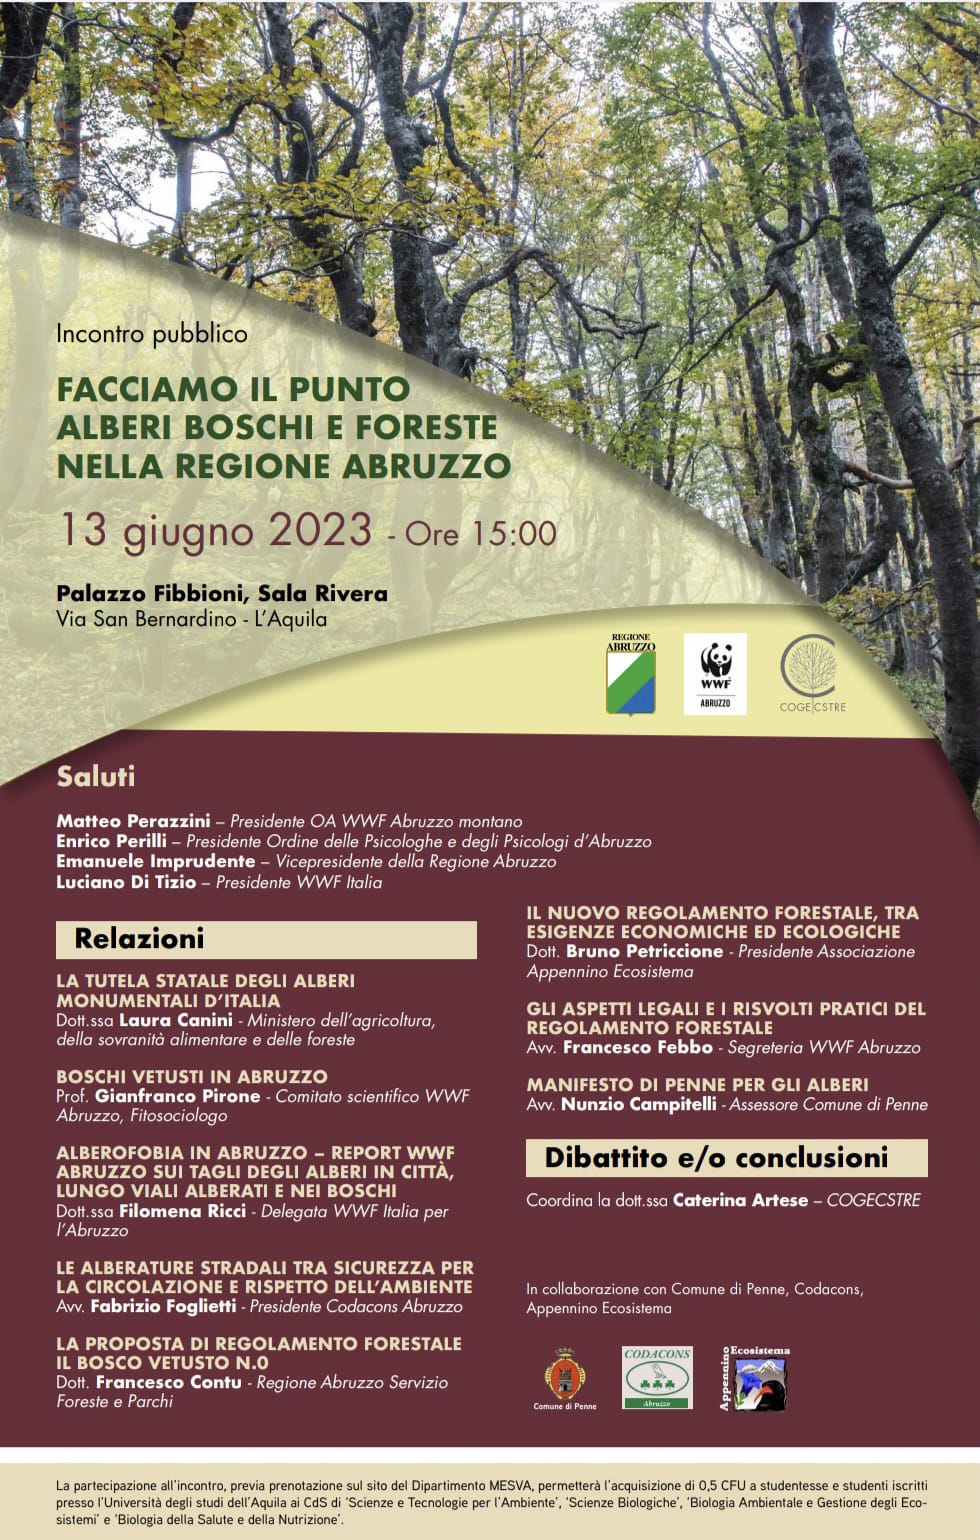 Alberi in Abruzzo, convegno organizzato dal WWF Abruzzo e dalla Cooperativa Cogecstre